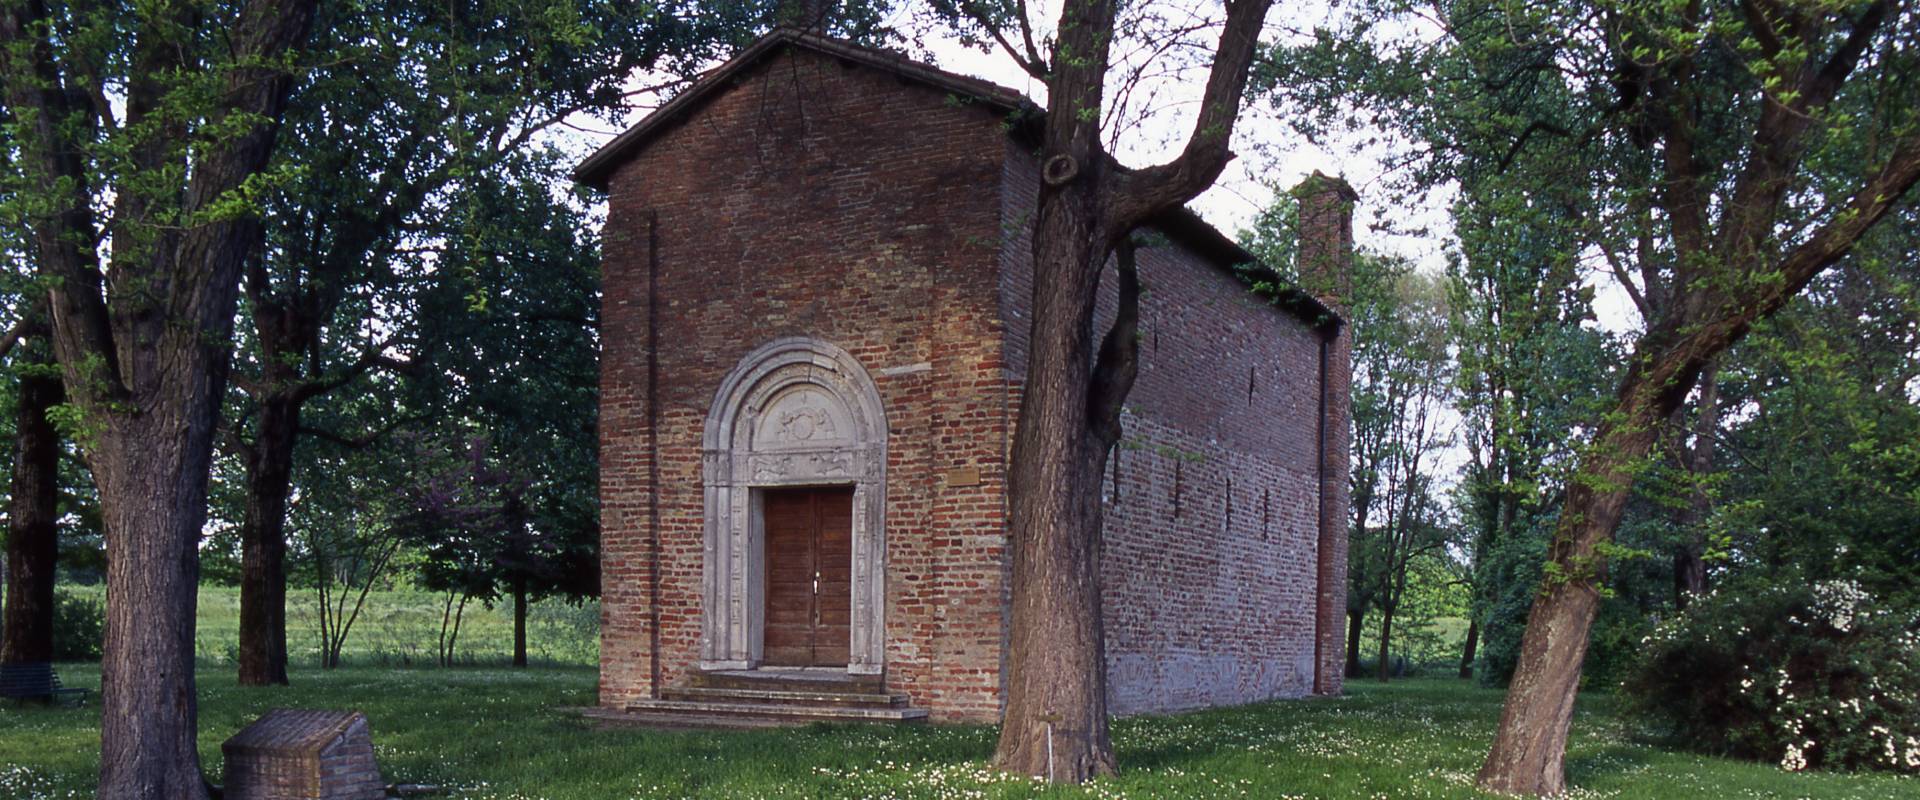 Pieve di San Giorgio photo by Rebeschini